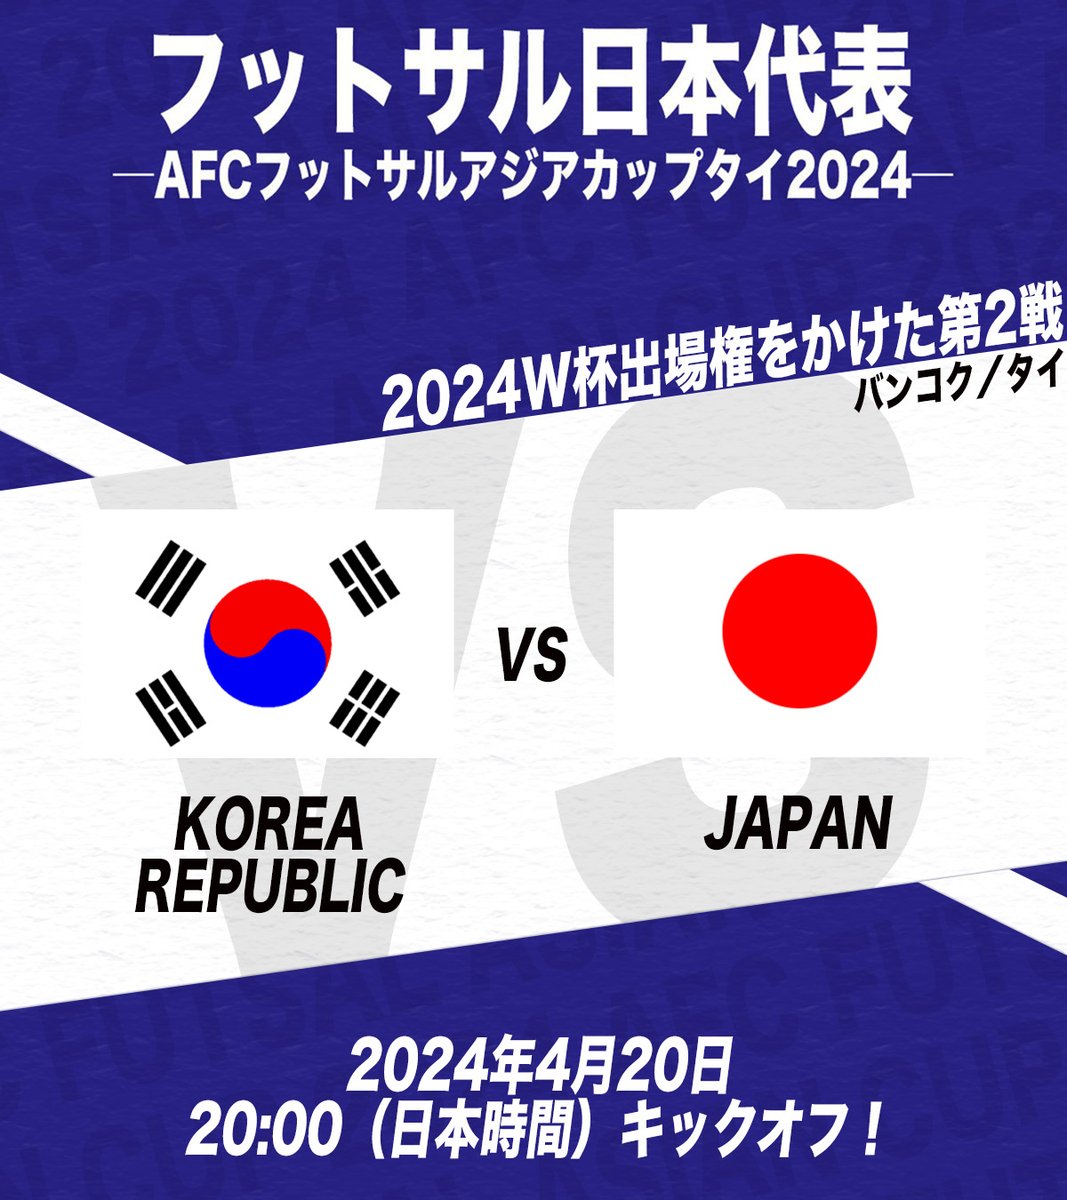 ✨得点王が決めた！日本先制✨
／
「Ｆリーグ全員からエールを🔥」
#フットサル日本代表🇯🇵 を応援しよう！
＼

🔹━━━━━━━━━━━━━━━━━🔹
🏆AFCフットサルアジアカップタイ2024
⚔️グループステージ
🗓4月20日（土）
⌚️20:00（日本時間）
🆚韓国代表vs日本代表
📺#DAZN／#ABEMAdeDAZN